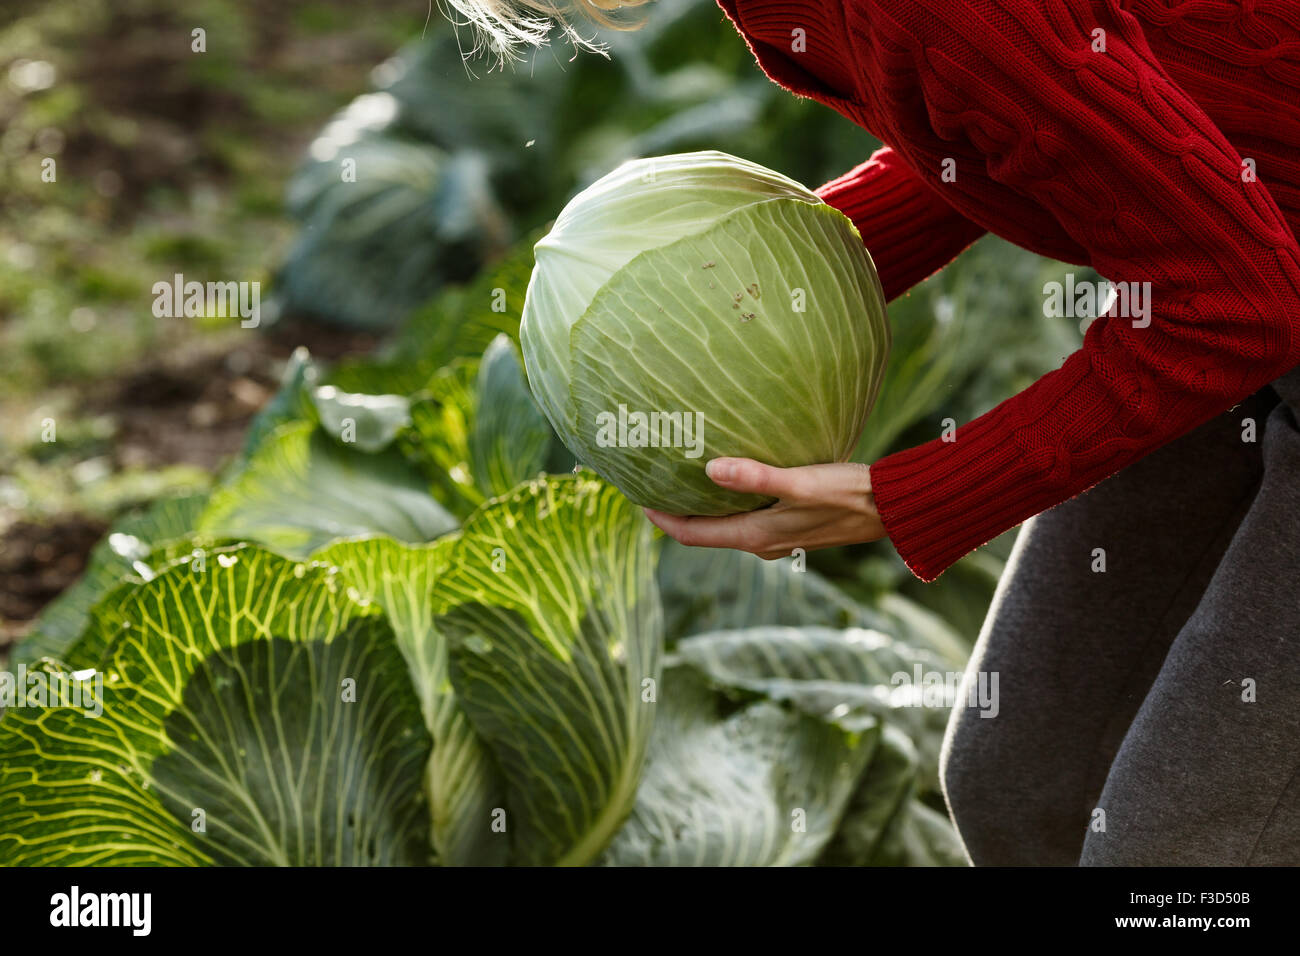 Frau hält einen frisch gepflückten geschälten Kohl.  Ernte, lokale Landwirtschaft, Locavore Movenet Konzept Stockfoto